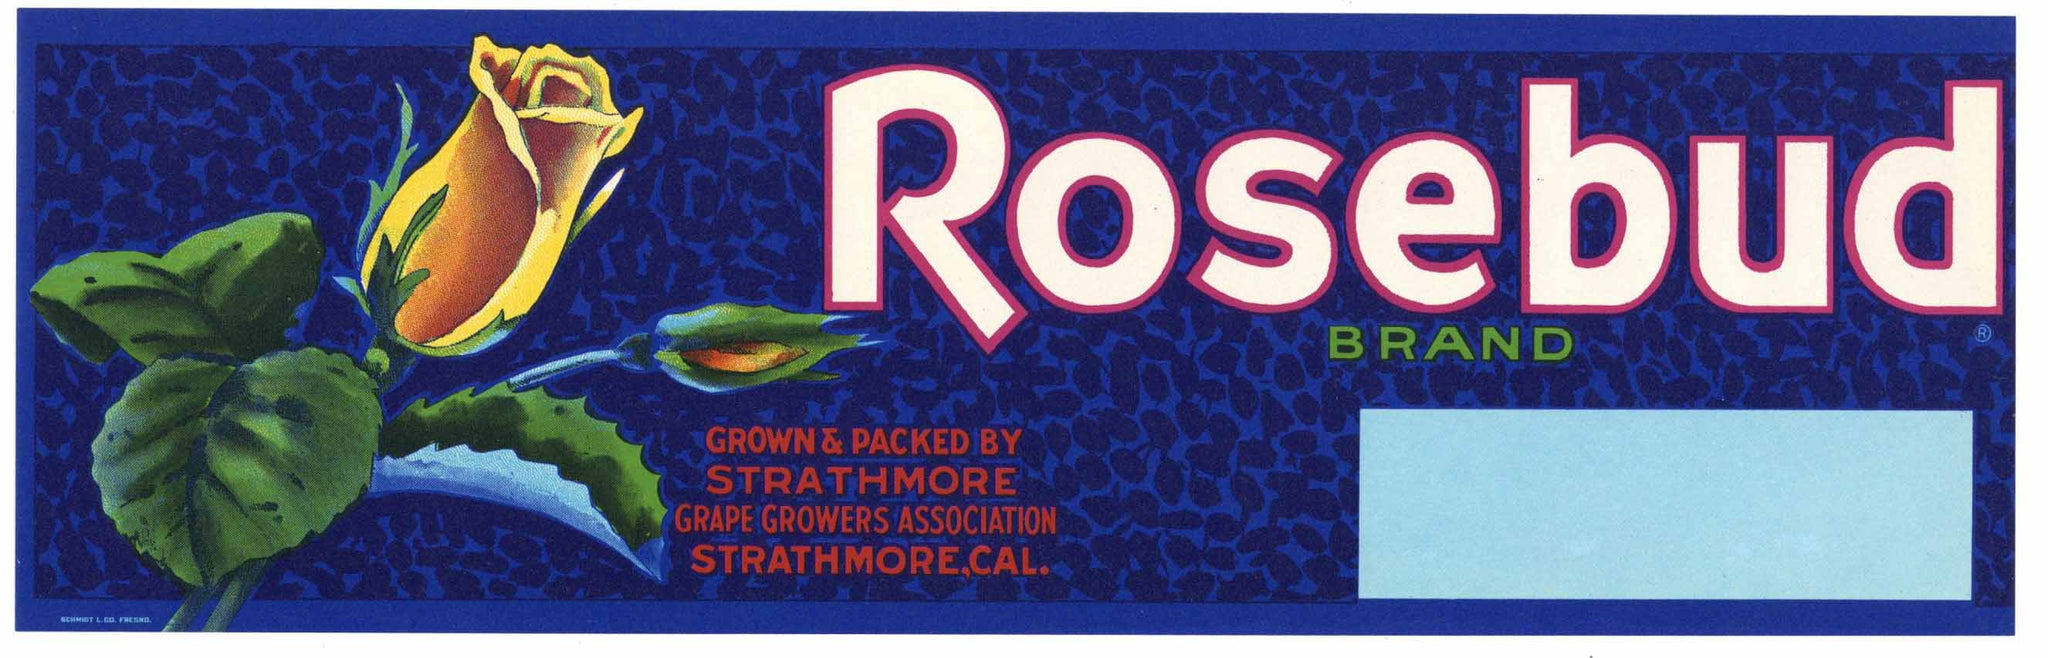 Rosebud Brand Vintage Strathmore Fruit Crate Label